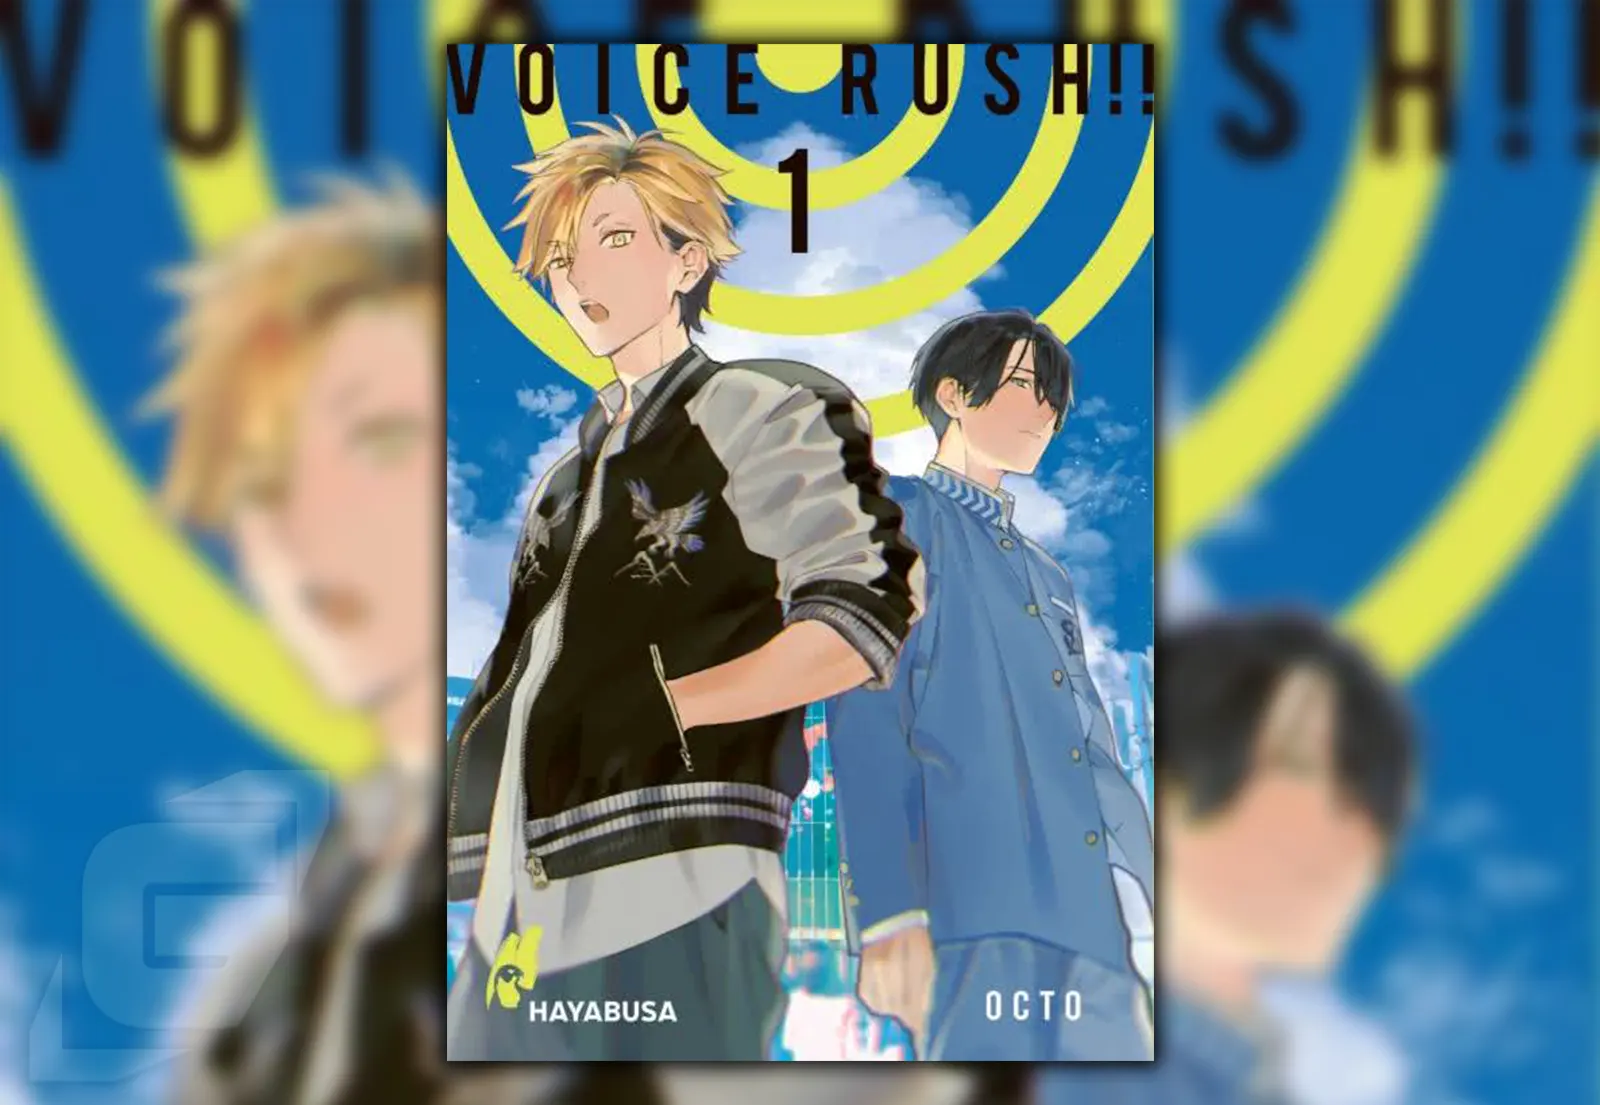 Manga Voice Rush!! Band 1 - Review